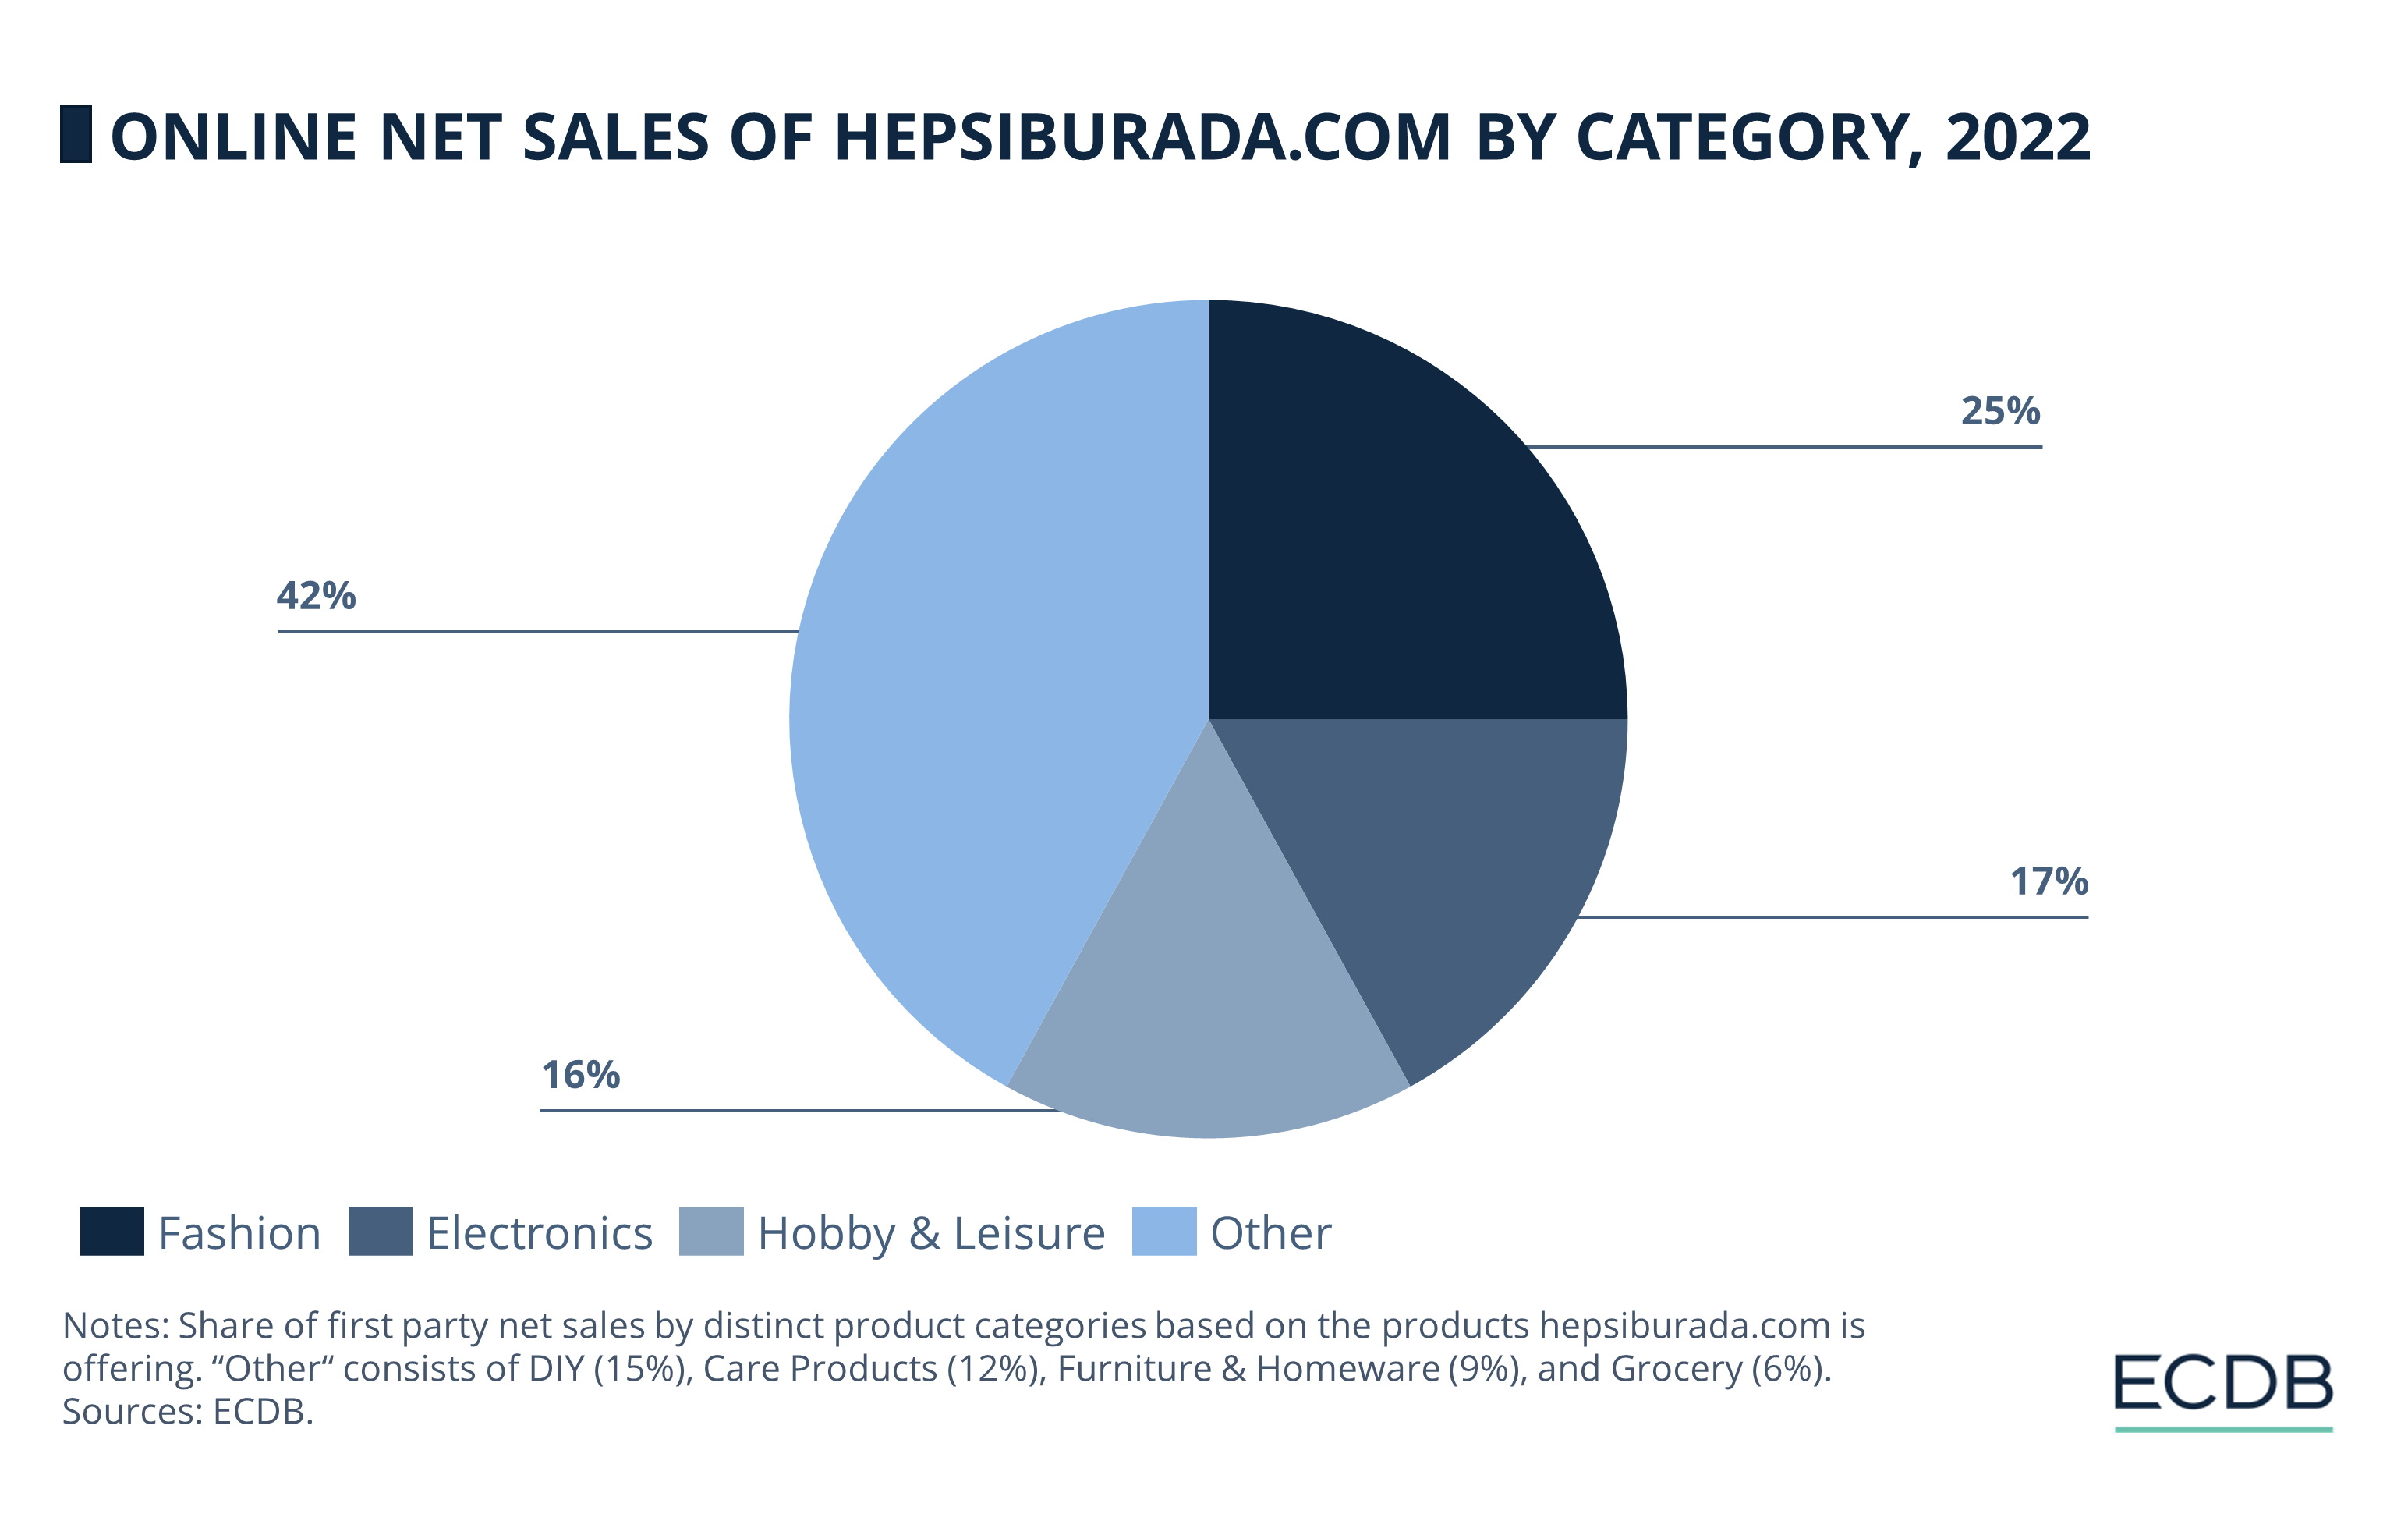 Online Net Sales of Hepsiburada.com by Category, 2022